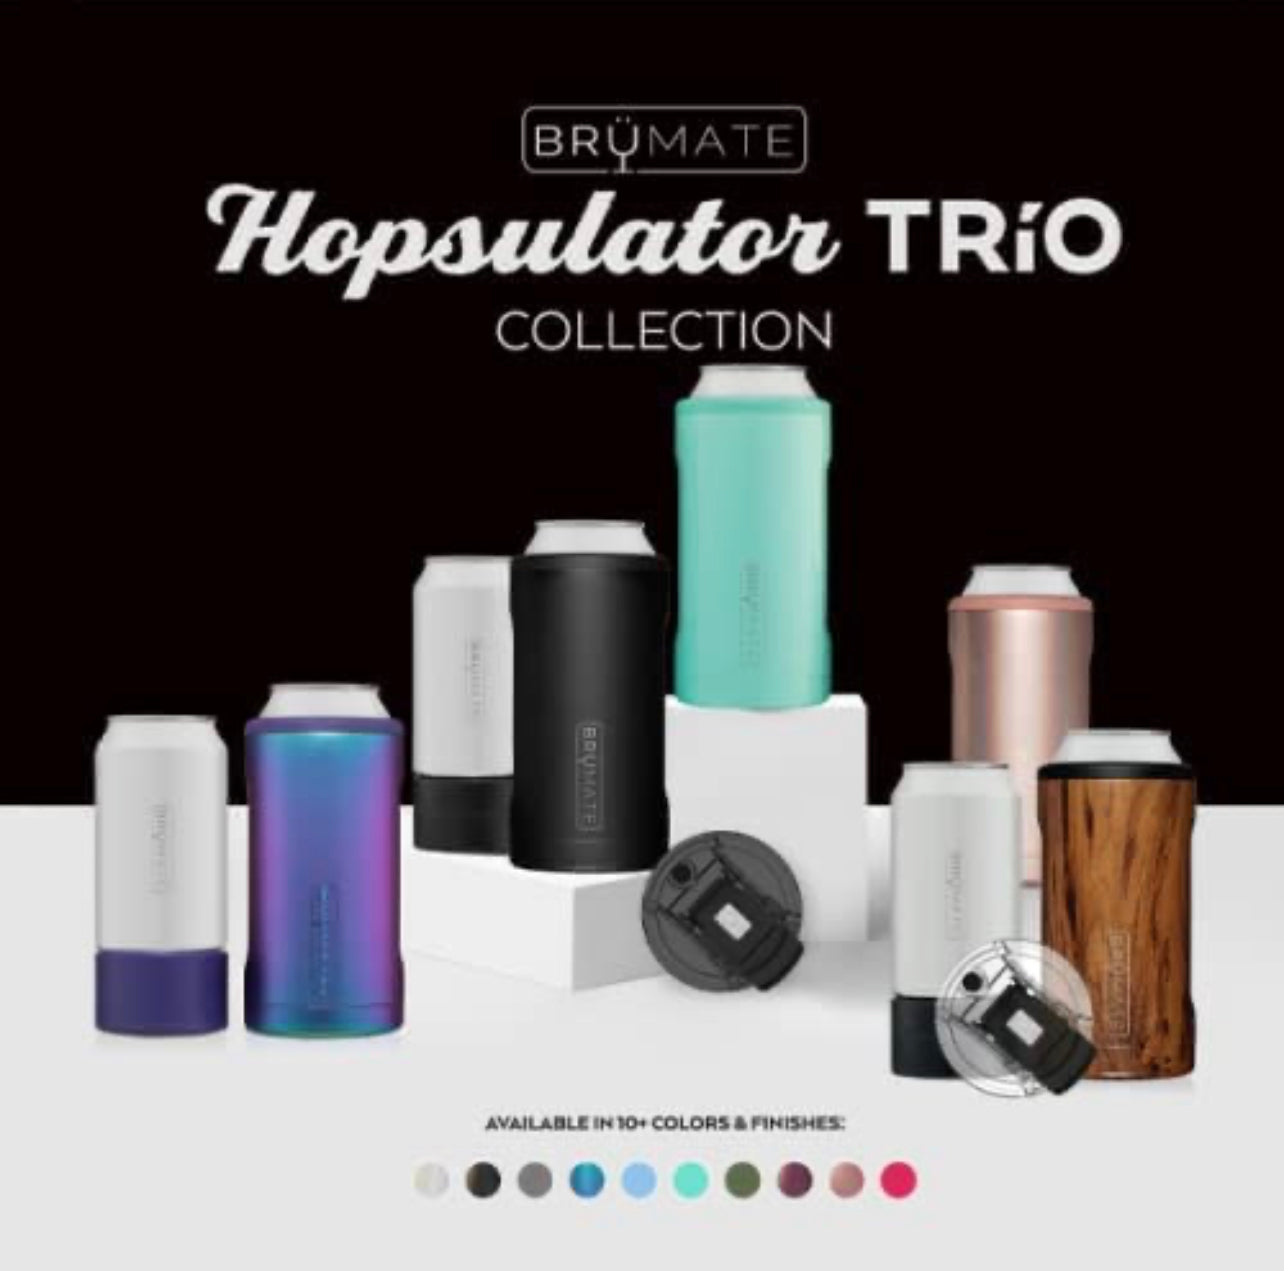 BruMate Hopsulator Trio 3-in-1 - Glitter Rose Gold